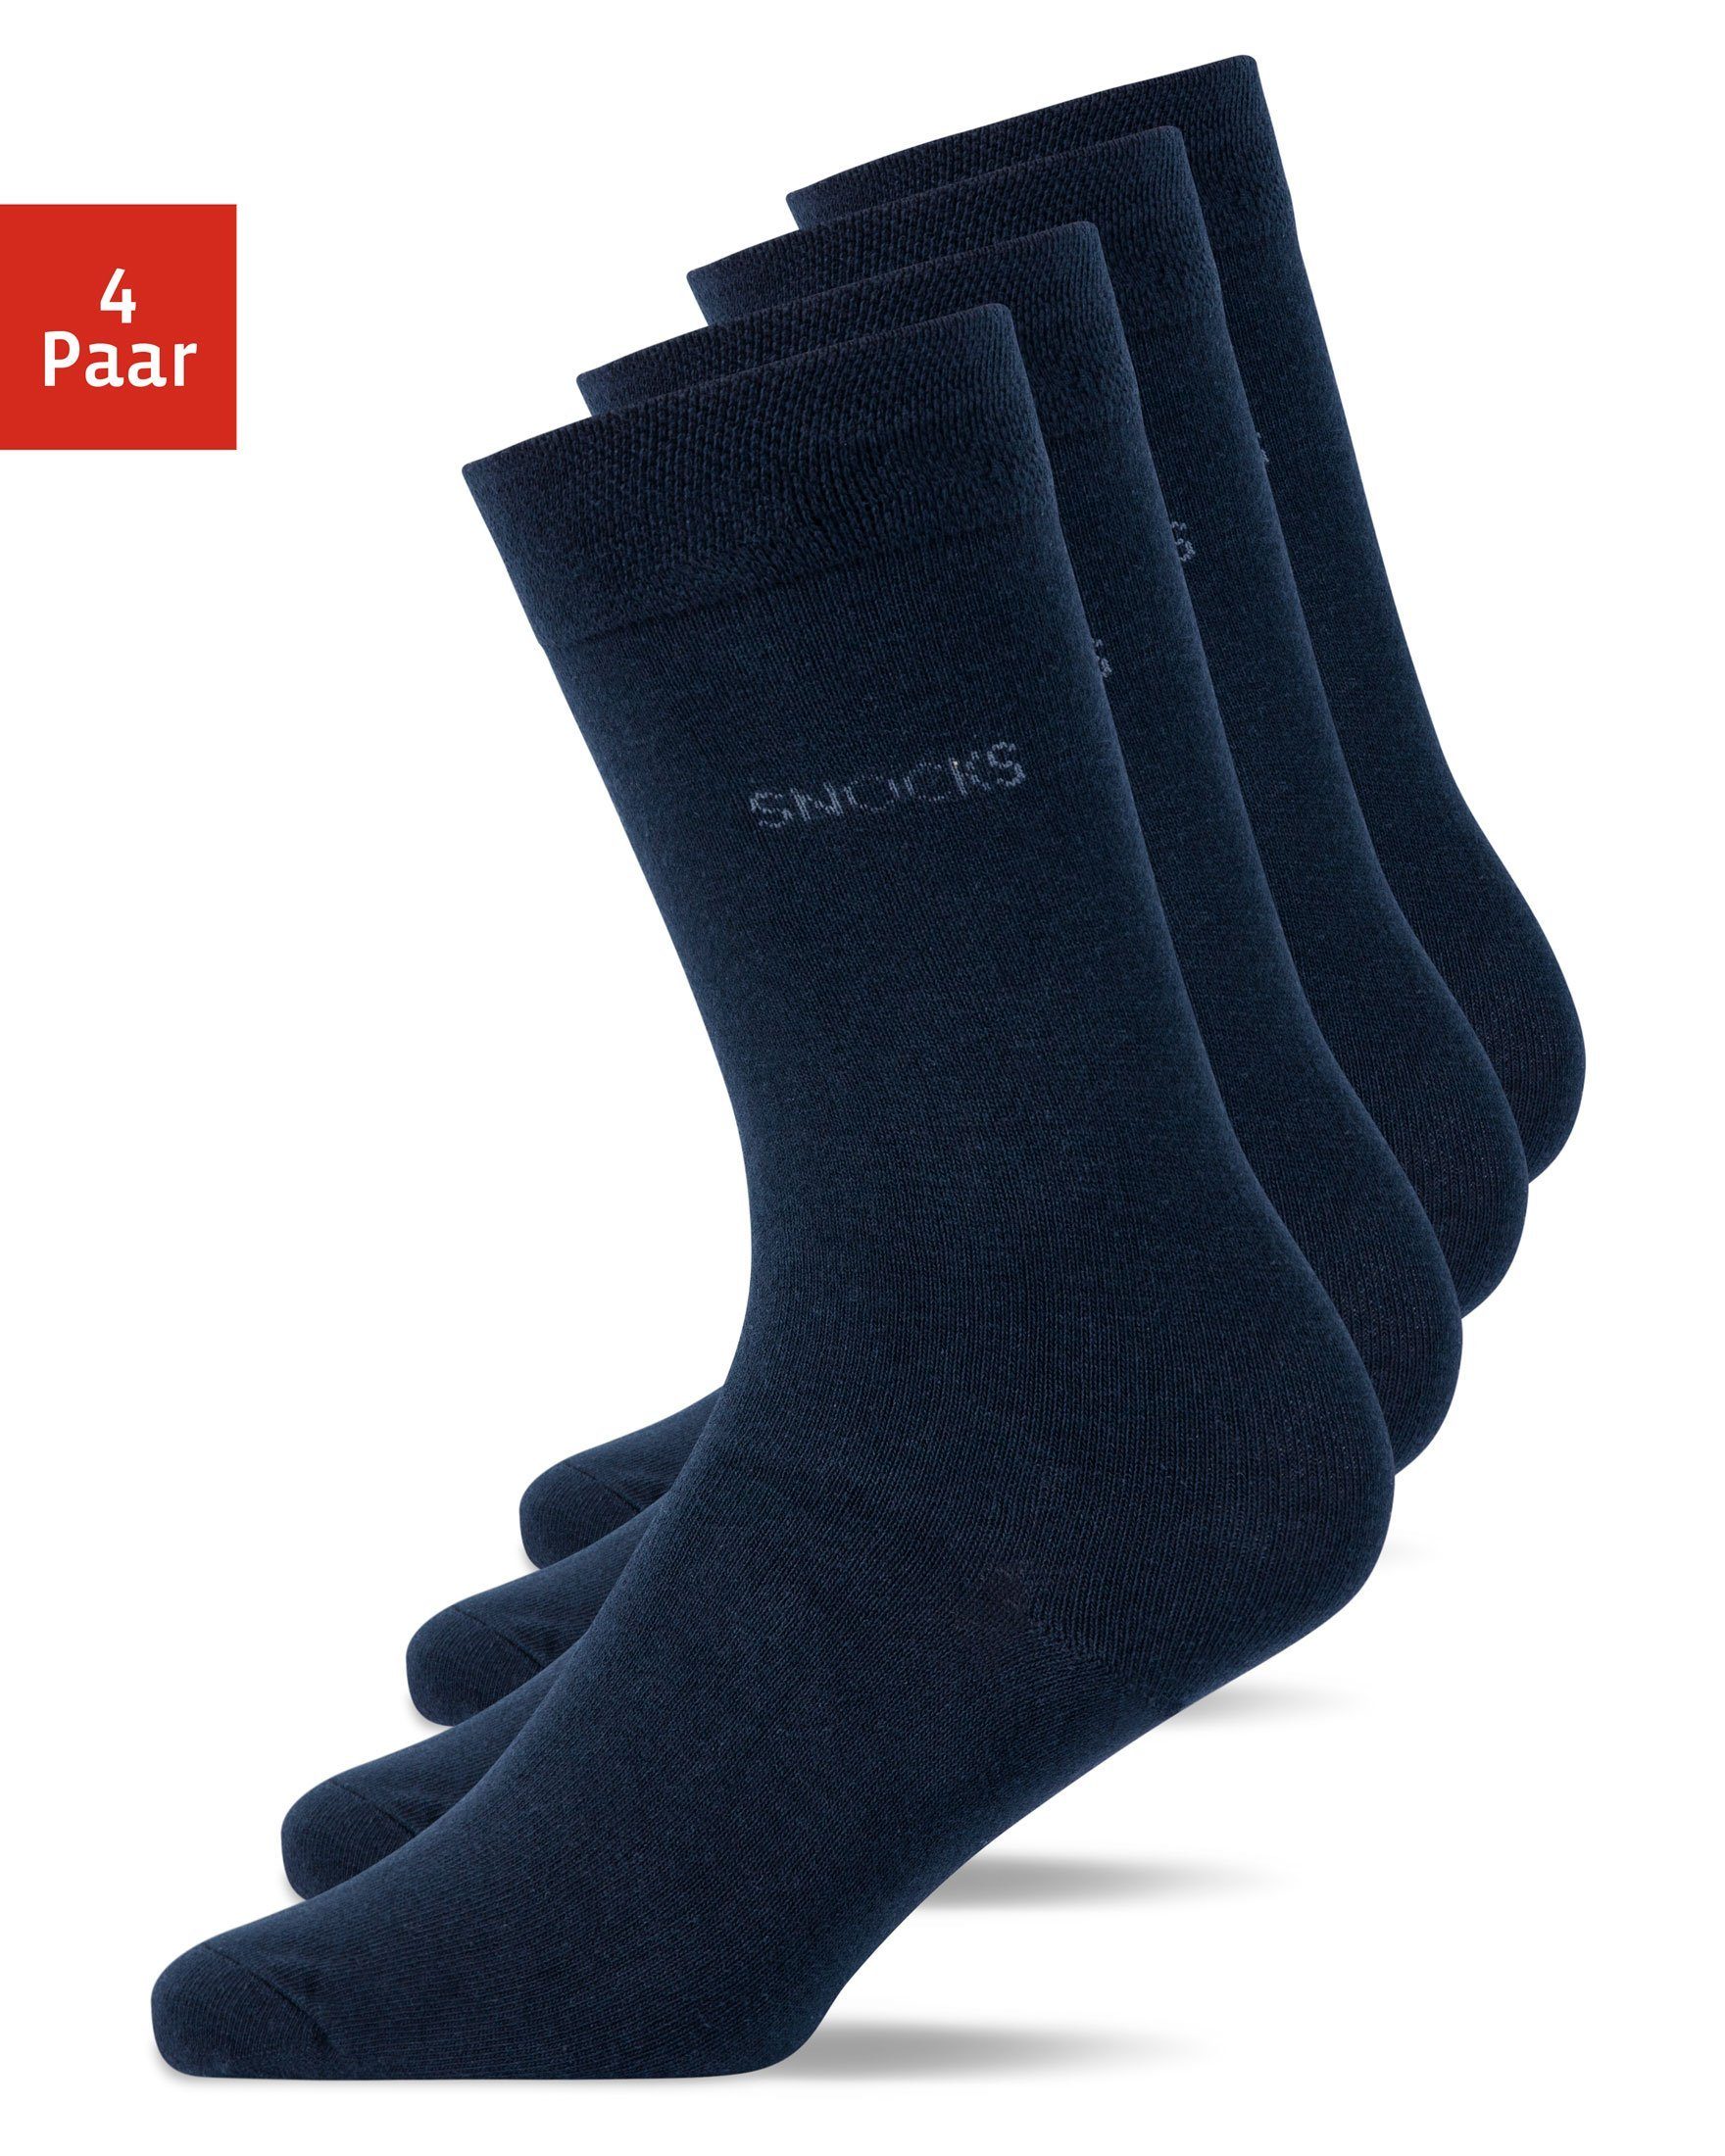 SNOCKS Businesssocken Business Socken (4-Paar) aus Bio-Baumwolle, für jeden Anzug geeignet 02 Blau | Kniestrümpfe